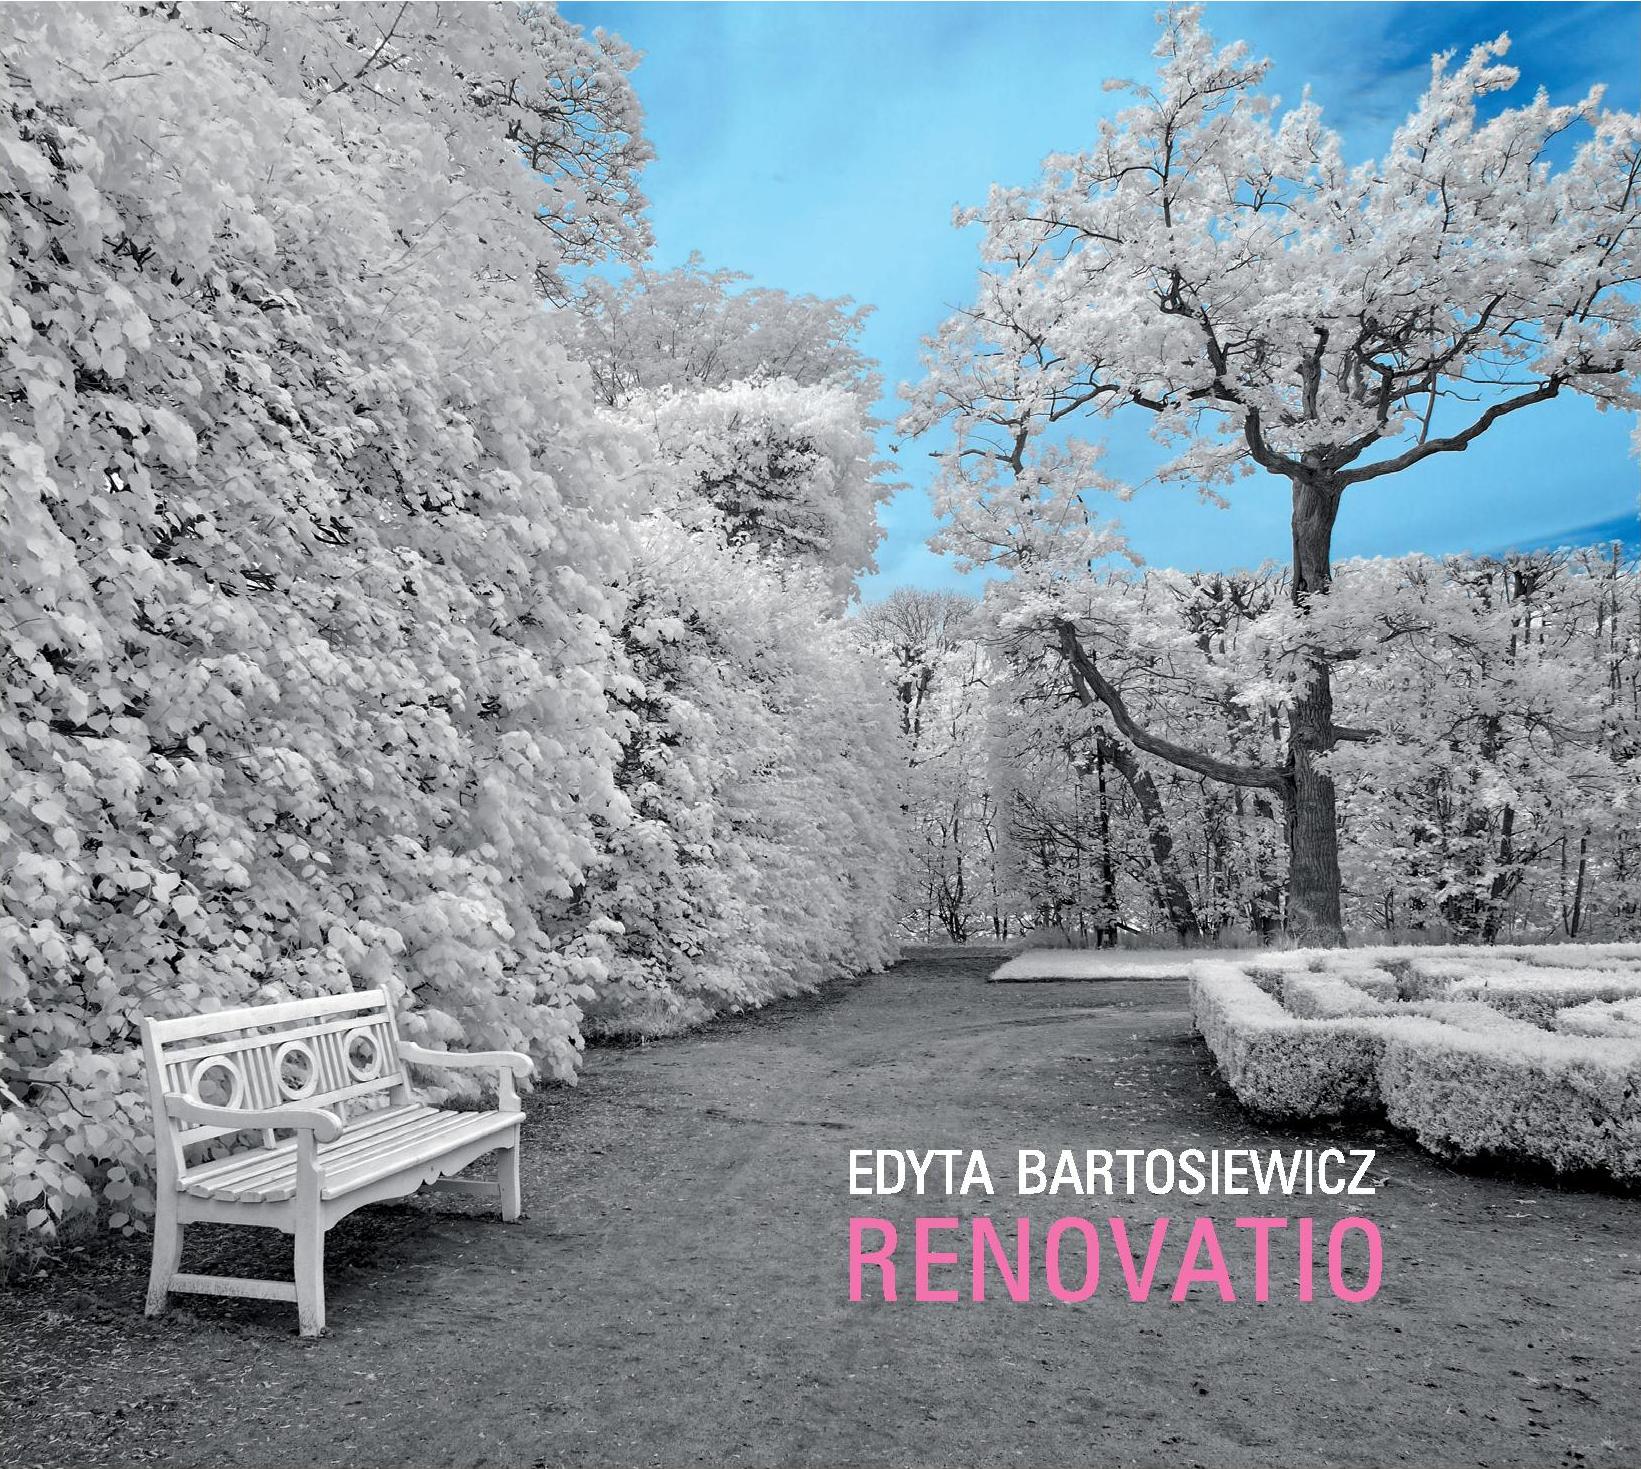 Edyta Bartosiewicz „Renovatio” (2013)